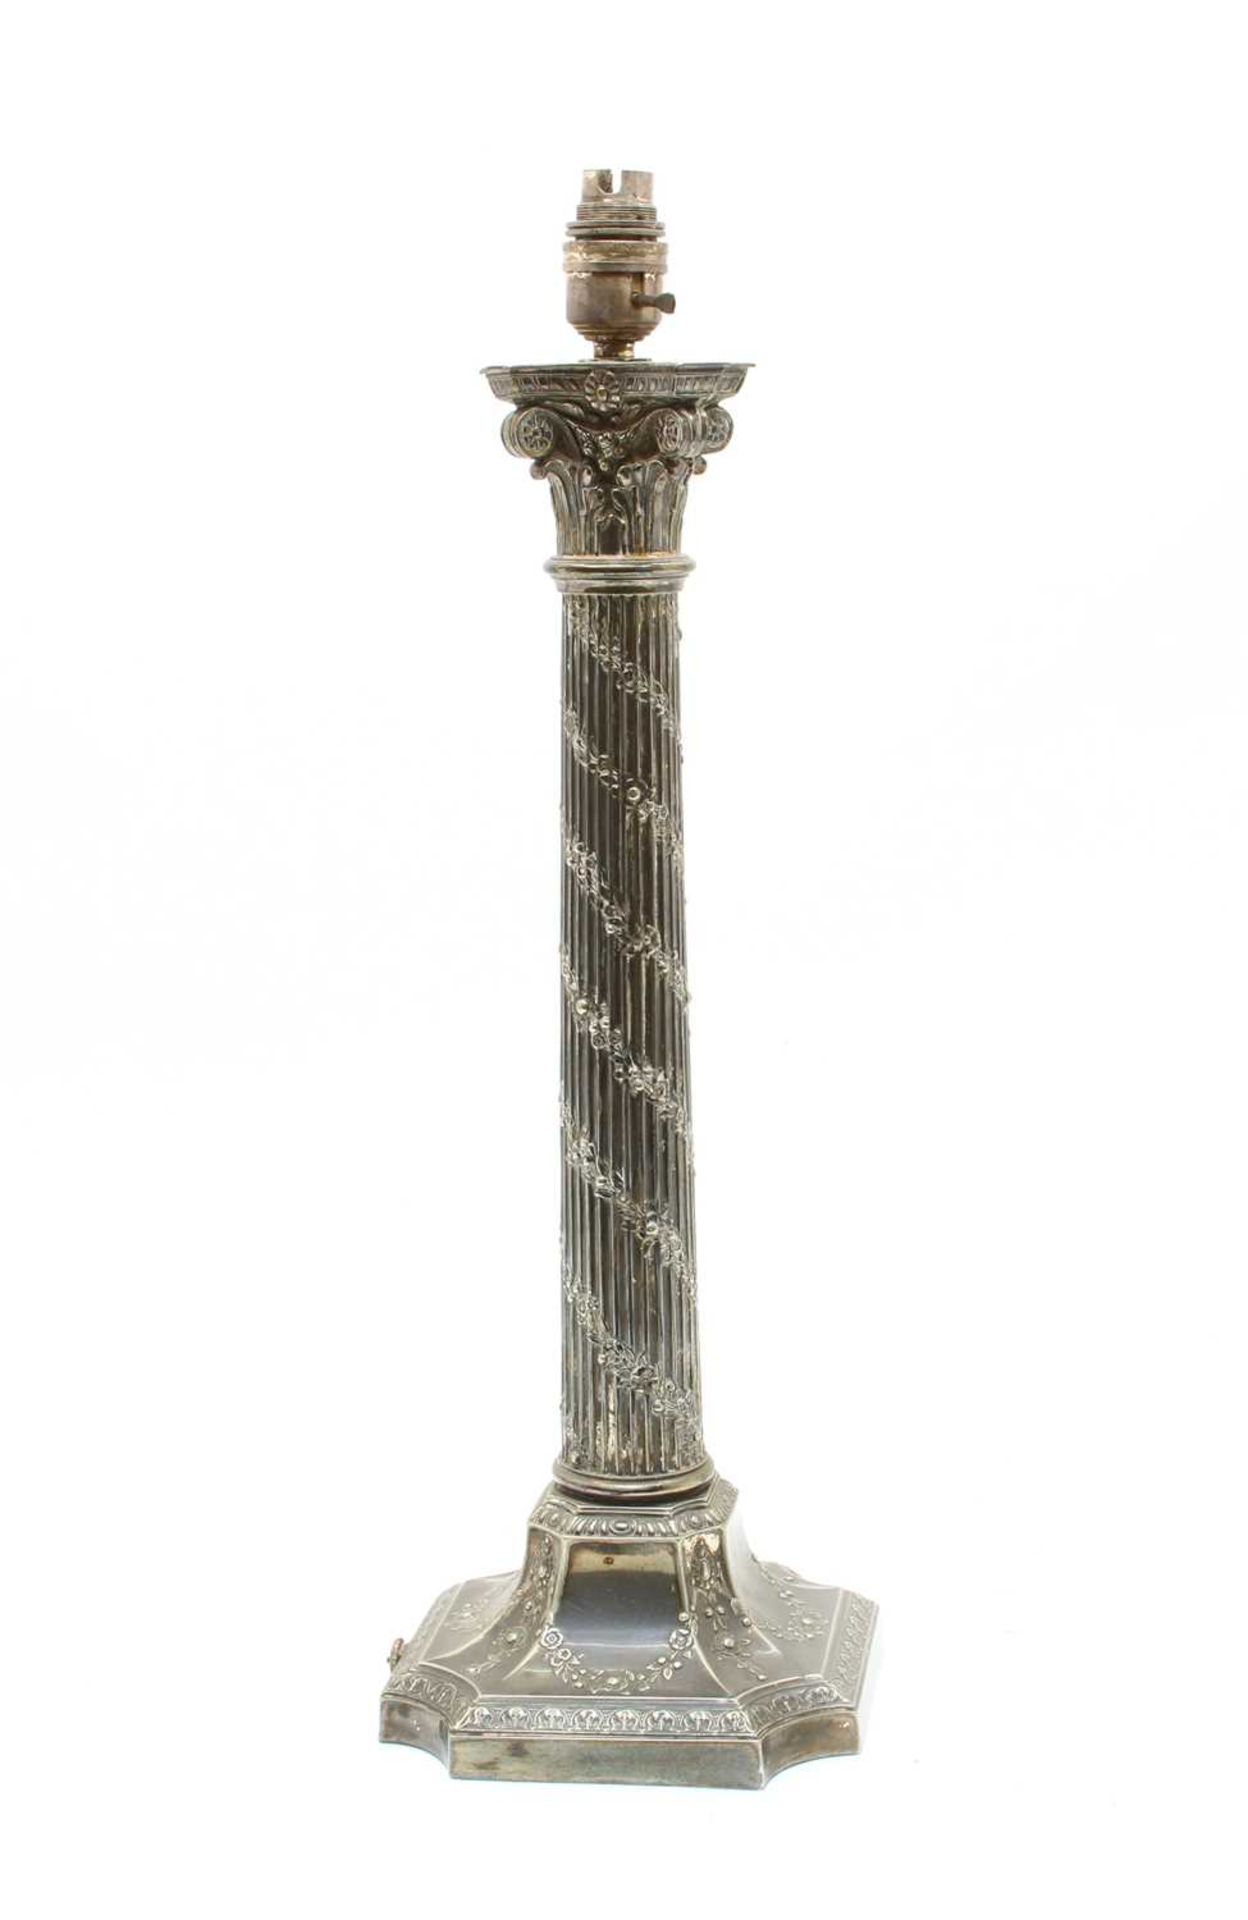 A Corinthian column lamp, - Image 2 of 3